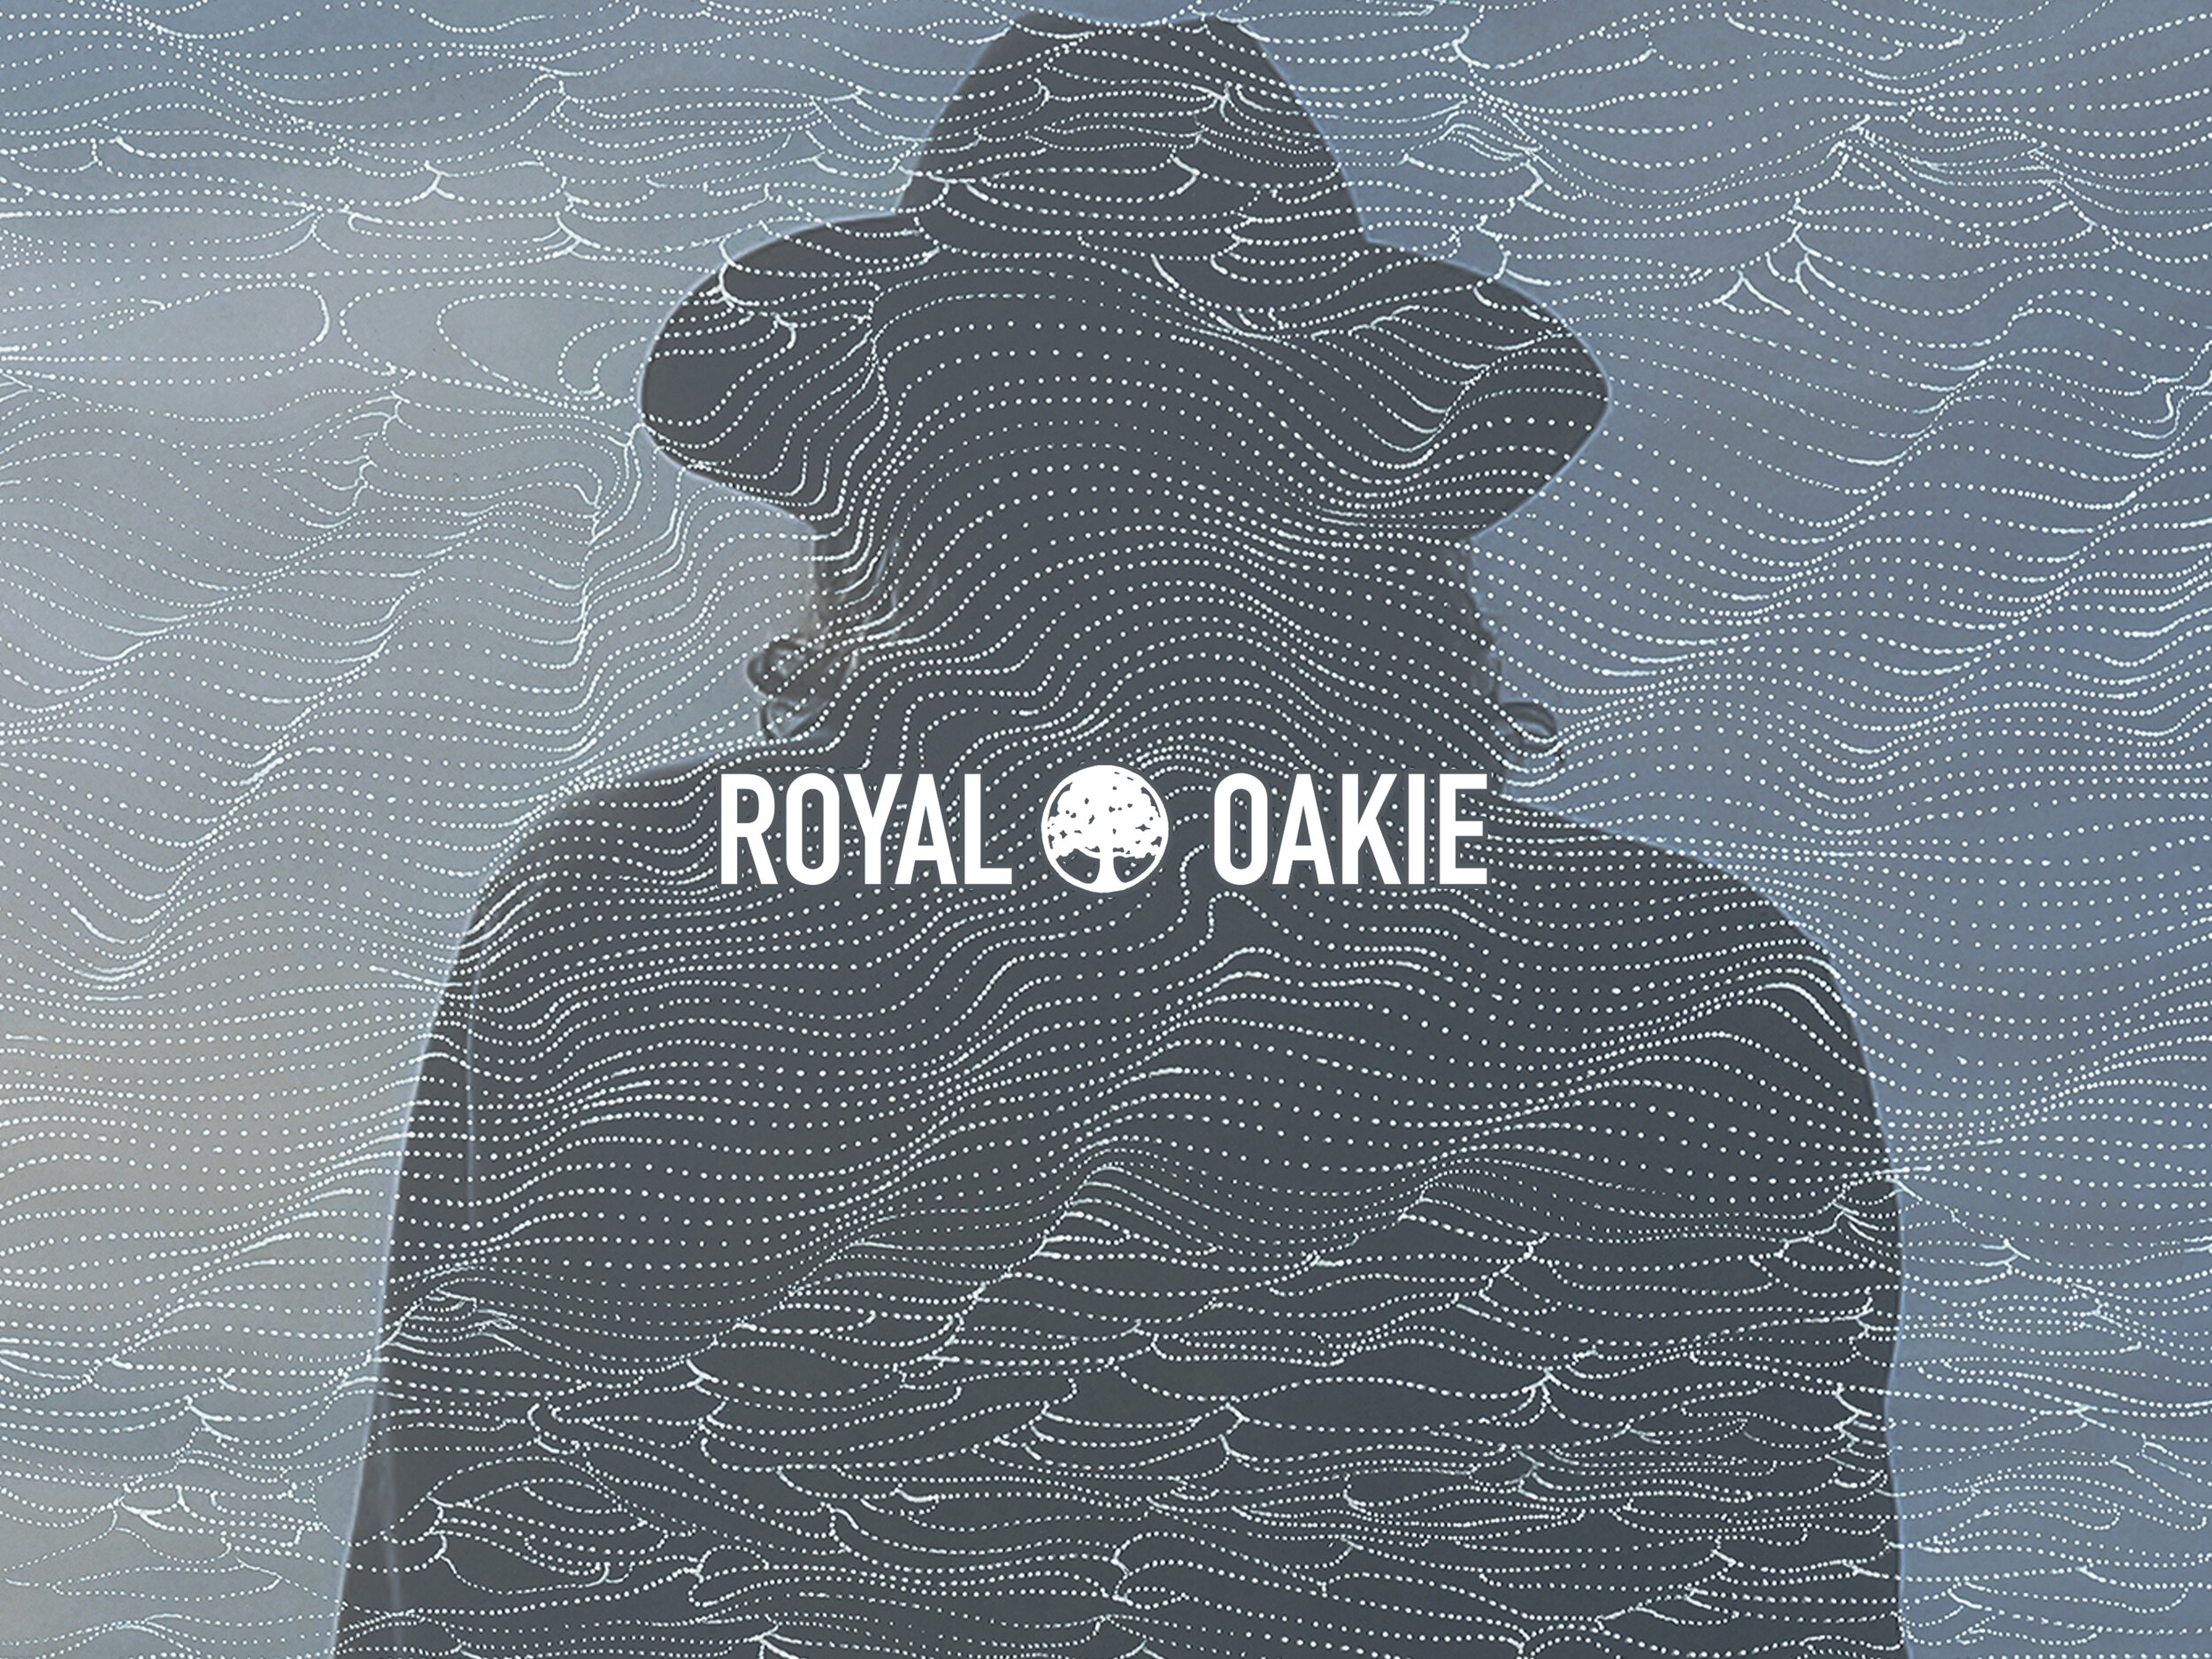 Royal Oakie Records